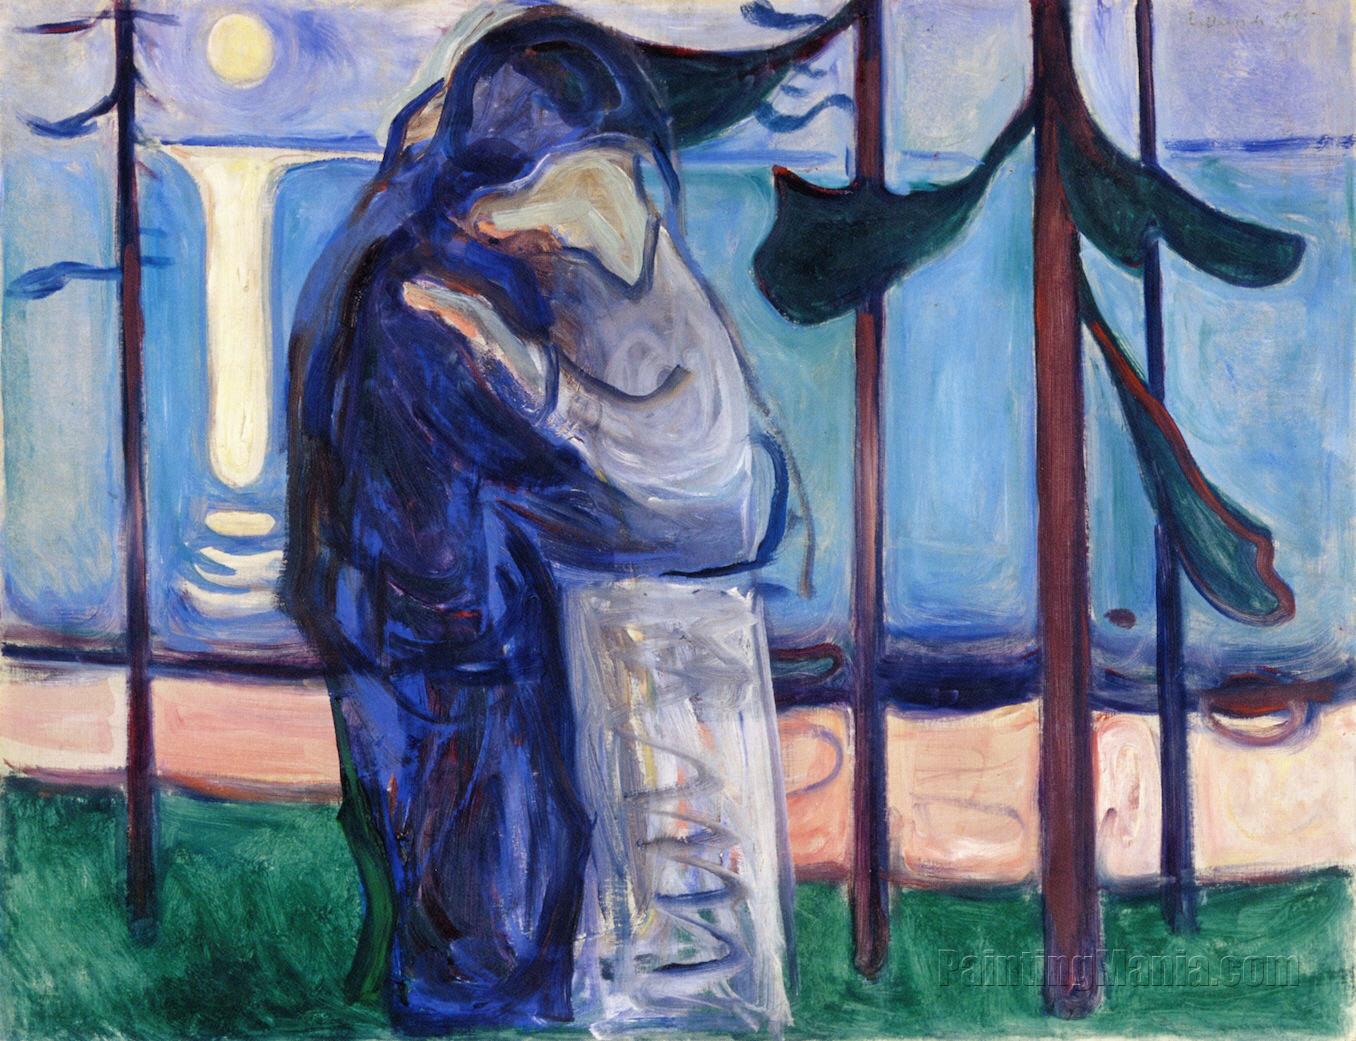 Porque também somos românticos: para ilustrar meu poema pensei na pintura Kiss on the shore by Moonlight, de Edvard Munch. Porque é perfeita como cenário, embora não nasça um alecrim na imagem... rsrs